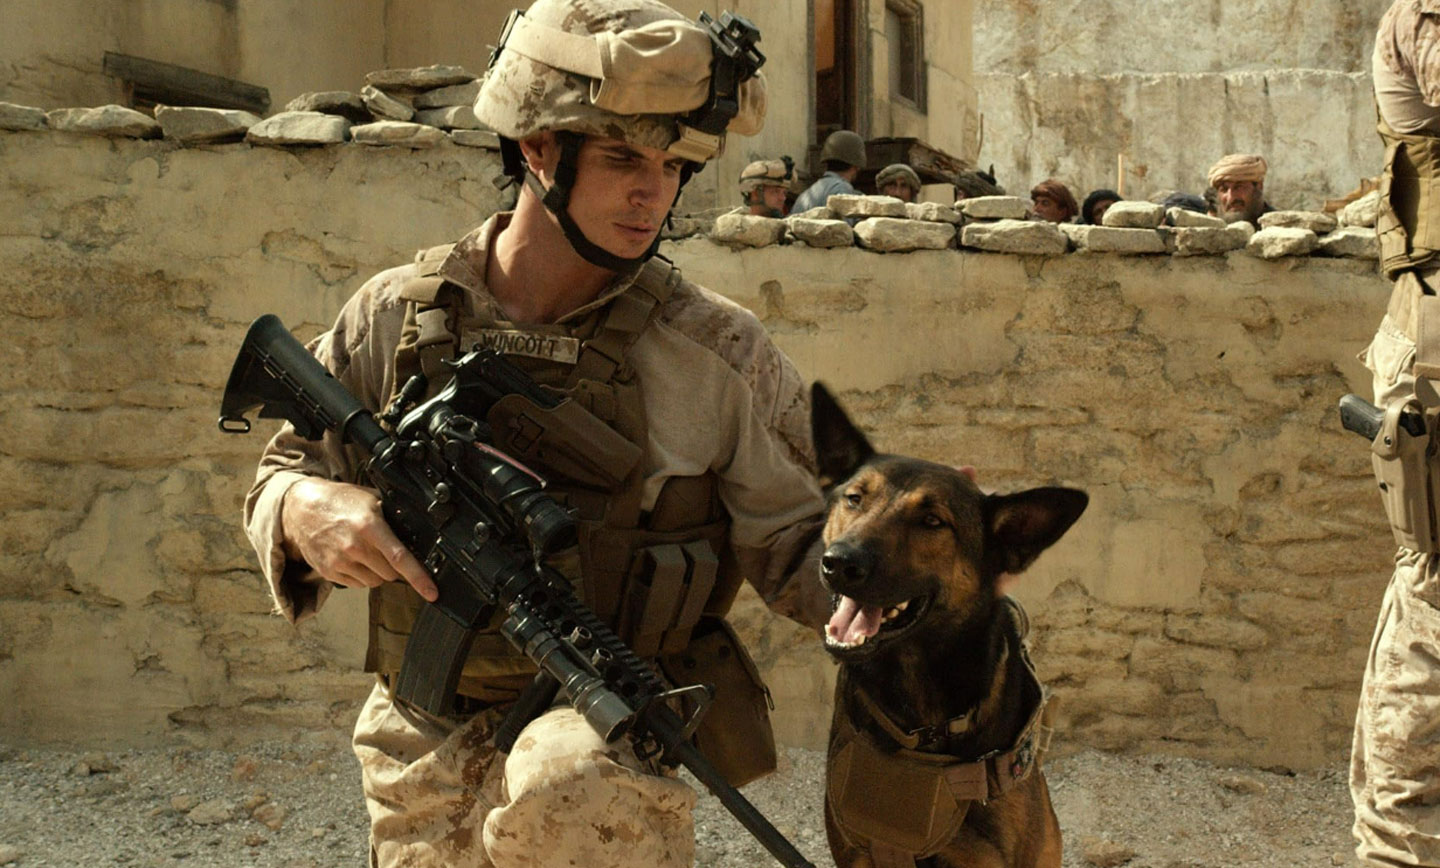 مکس داستان سگی از نژاد مالینوا بلژیکی را روایت می‌کند که در کنار تفنگداران دریایی آمریکا در افغانستان خدمت کرده است